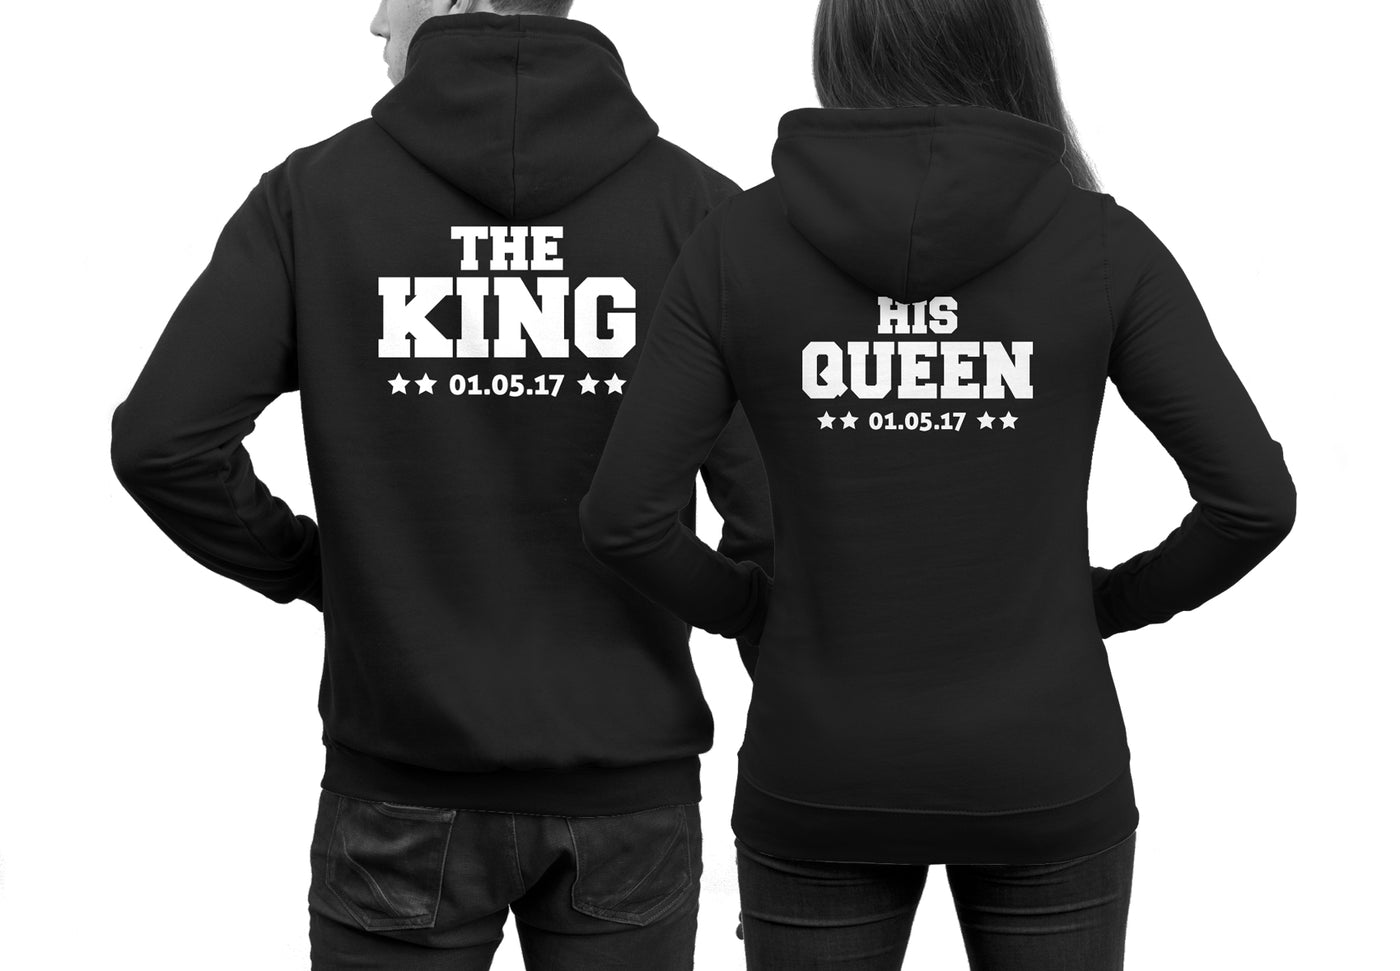 the-king-his-queen-hoodies_schwarz